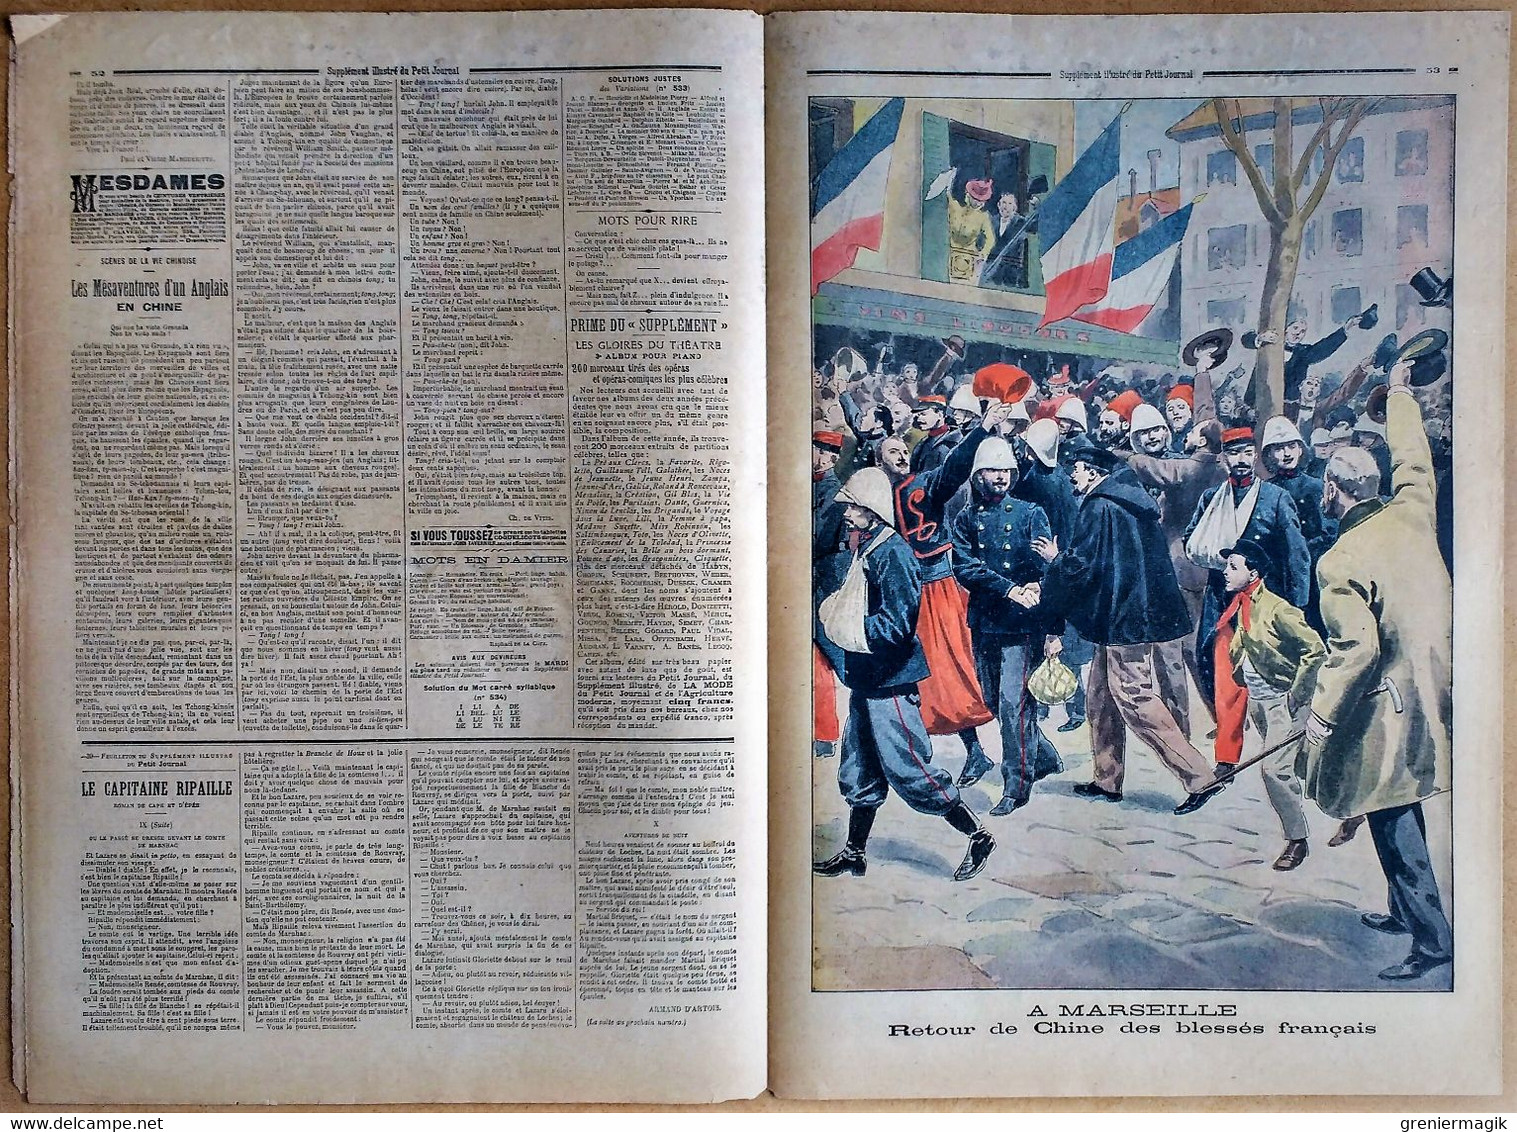 Le Petit Journal N°535 17/02/1901 Funérailles De La Reine Victoria (Frogmore) - A Marseille Retour De Chine Des Blessés - Le Petit Journal